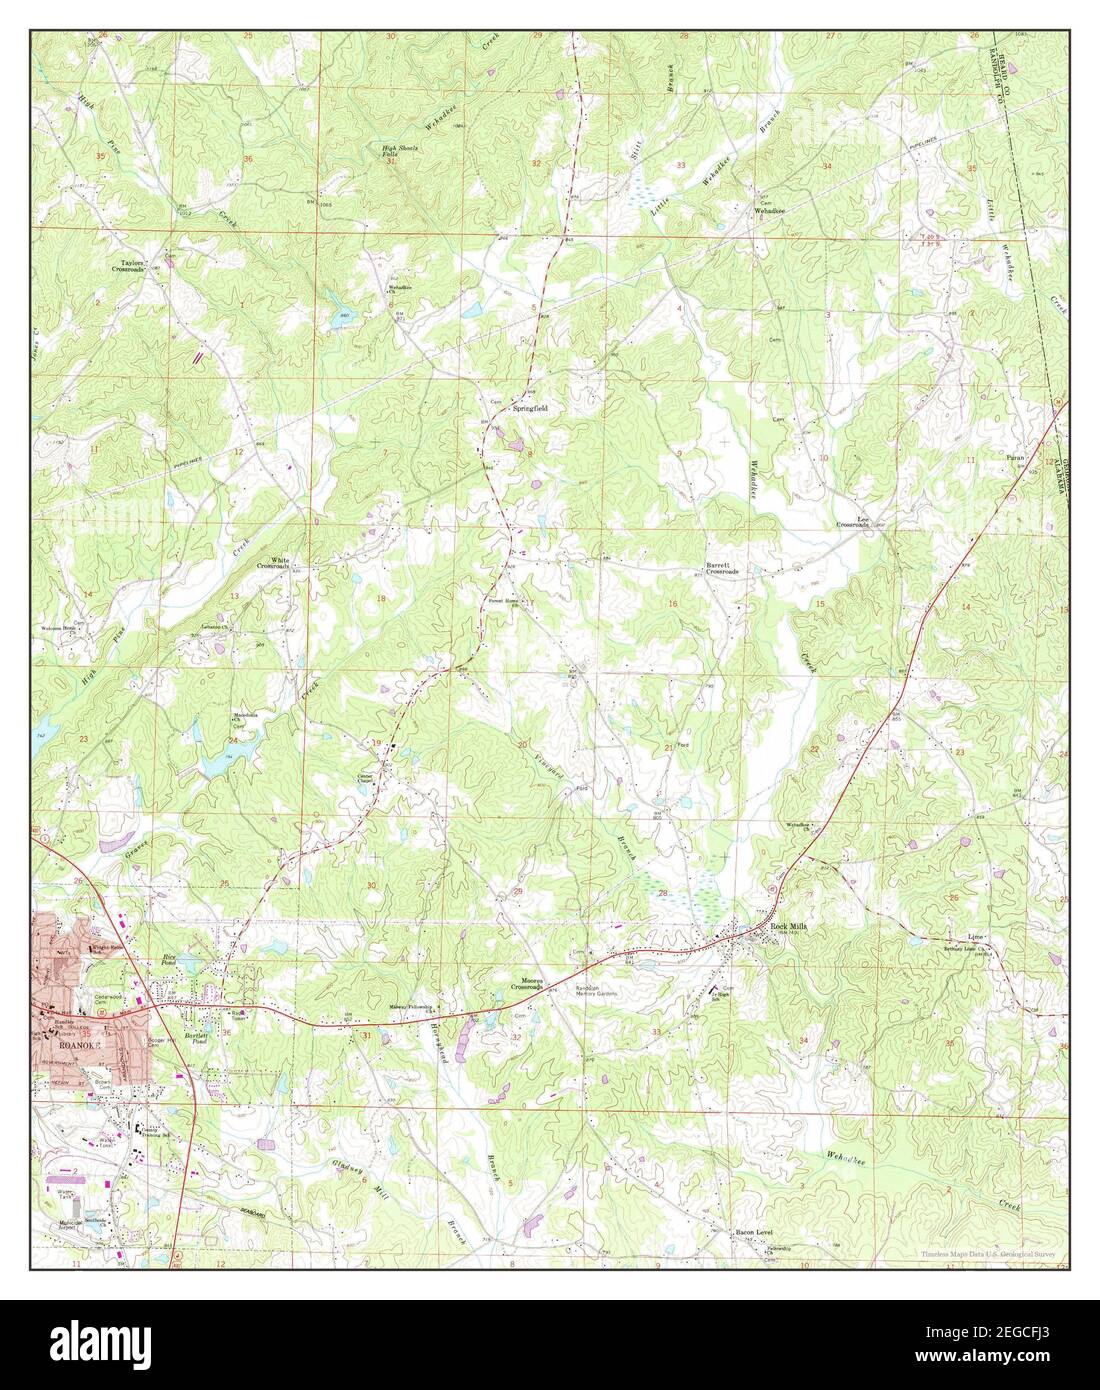 Roanoke East, Alabama, carte 1969, 1:24000, États-Unis d'Amérique par Timeless Maps, données U.S. Geological Survey Banque D'Images